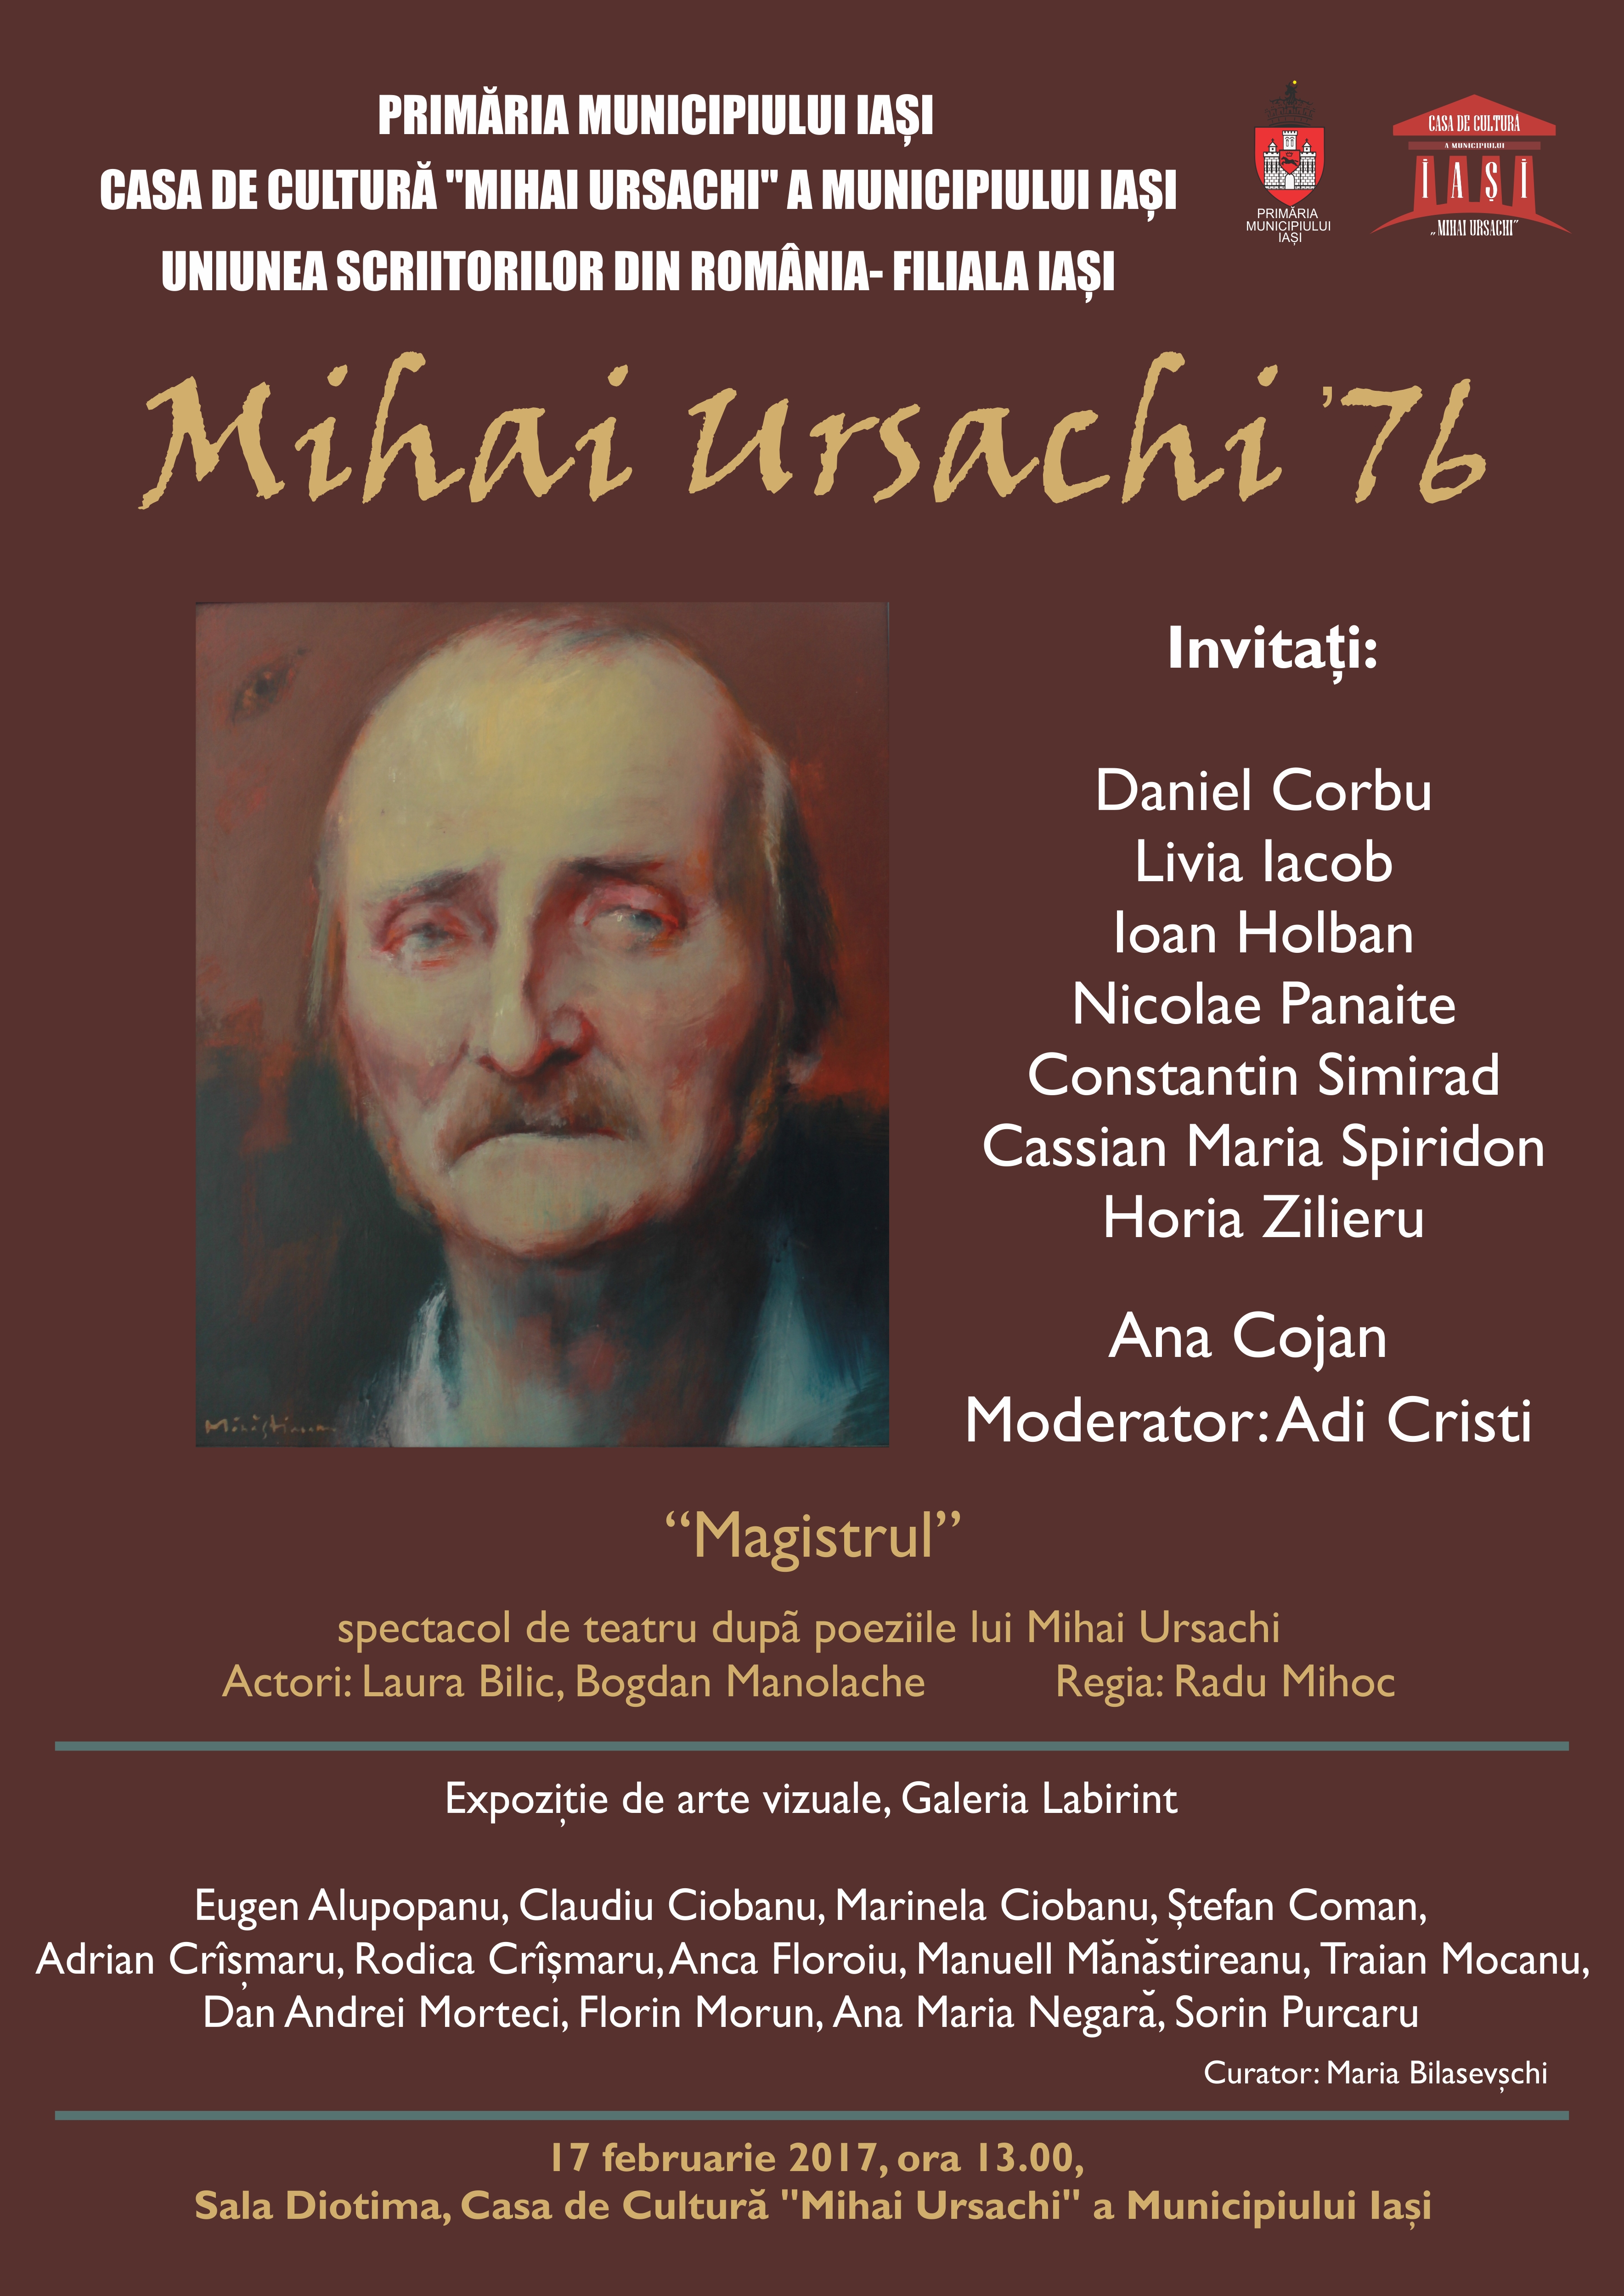 ”Mihai Ursachi 76”